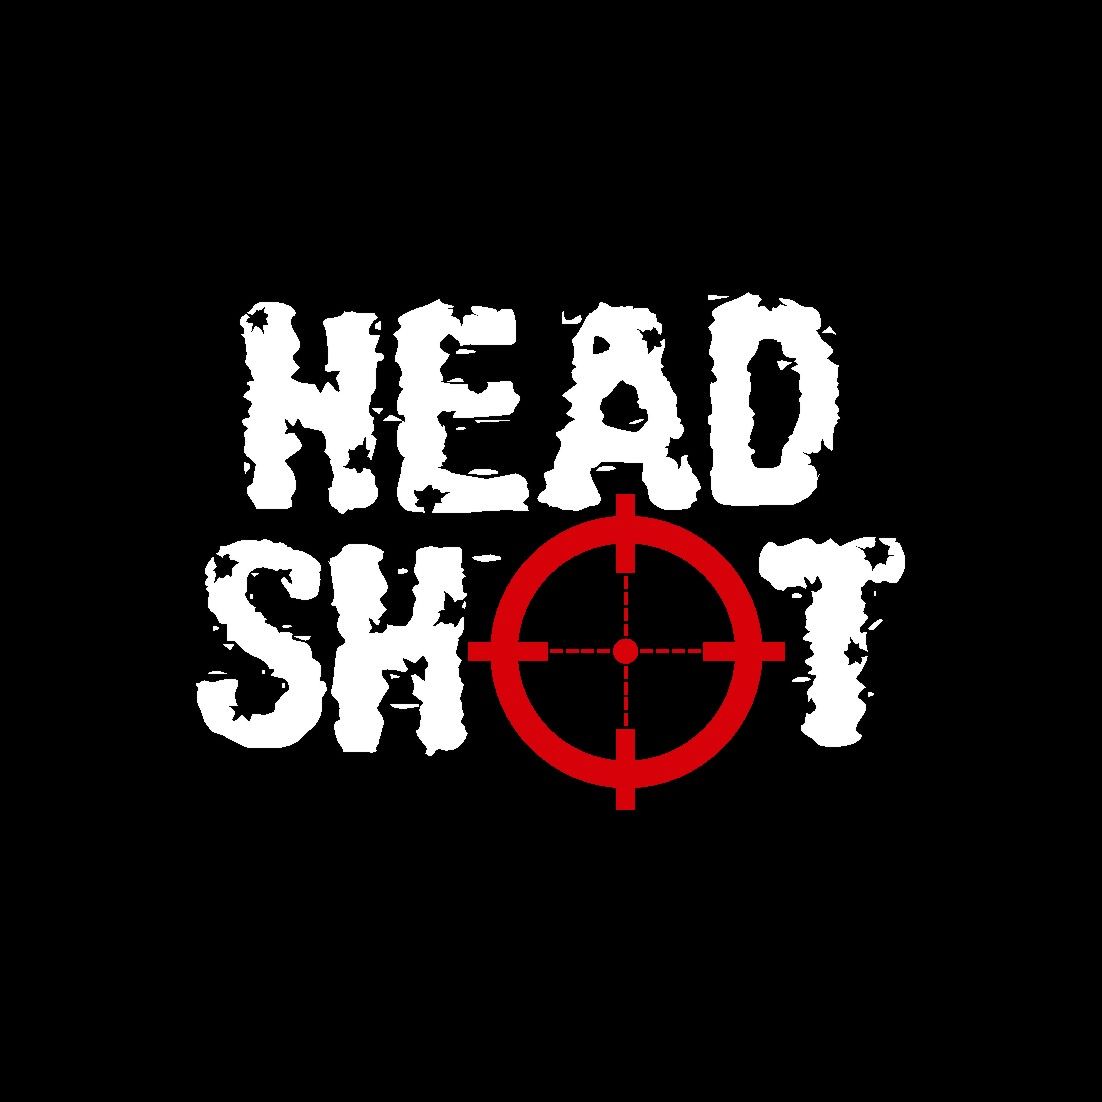 Логотип для игрового проекта HEADSHOT - дизайнер Ryaha